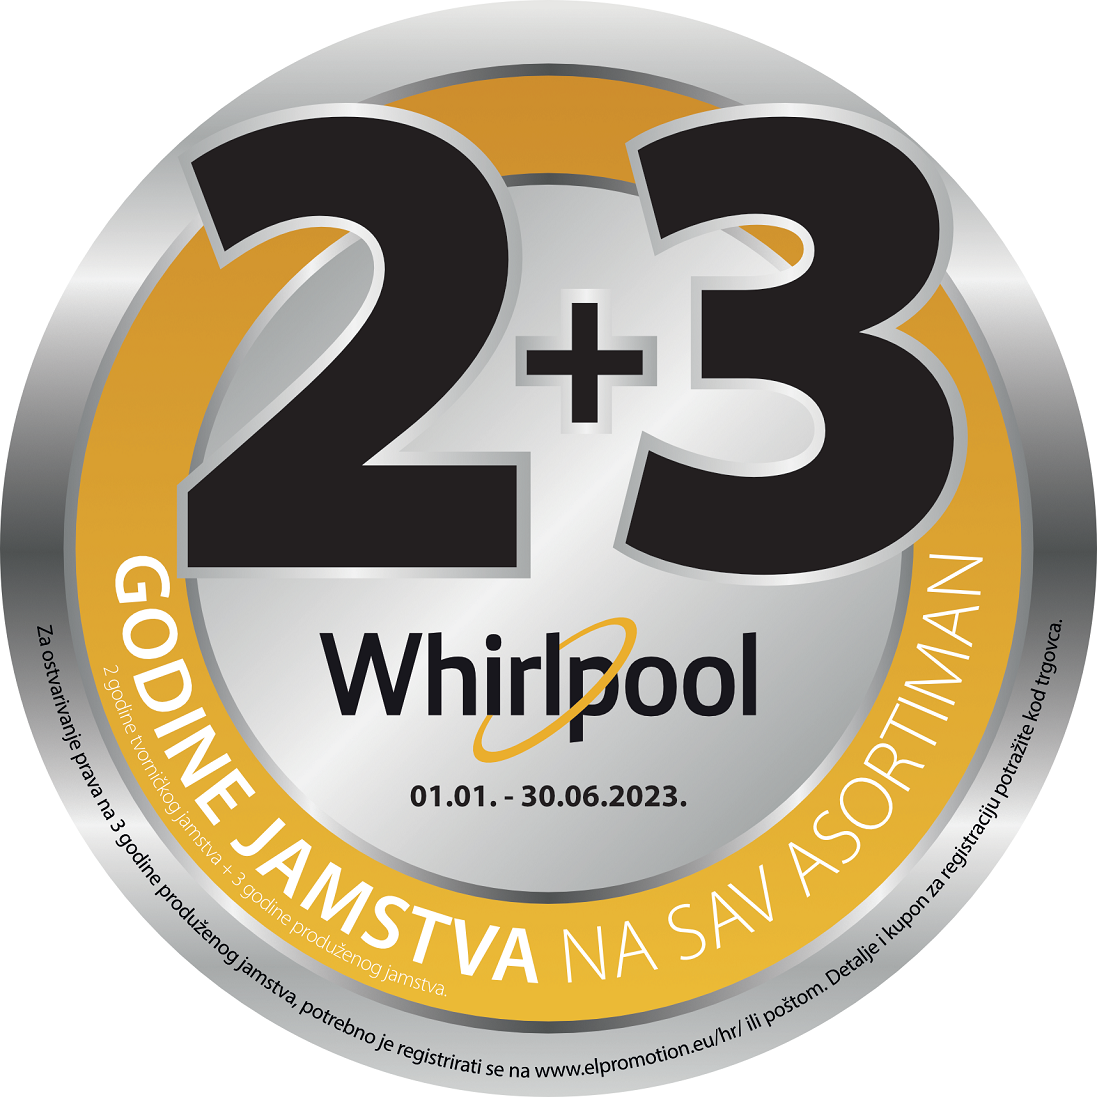 Whirlpool 2+3 godine garancije uz online prijavu